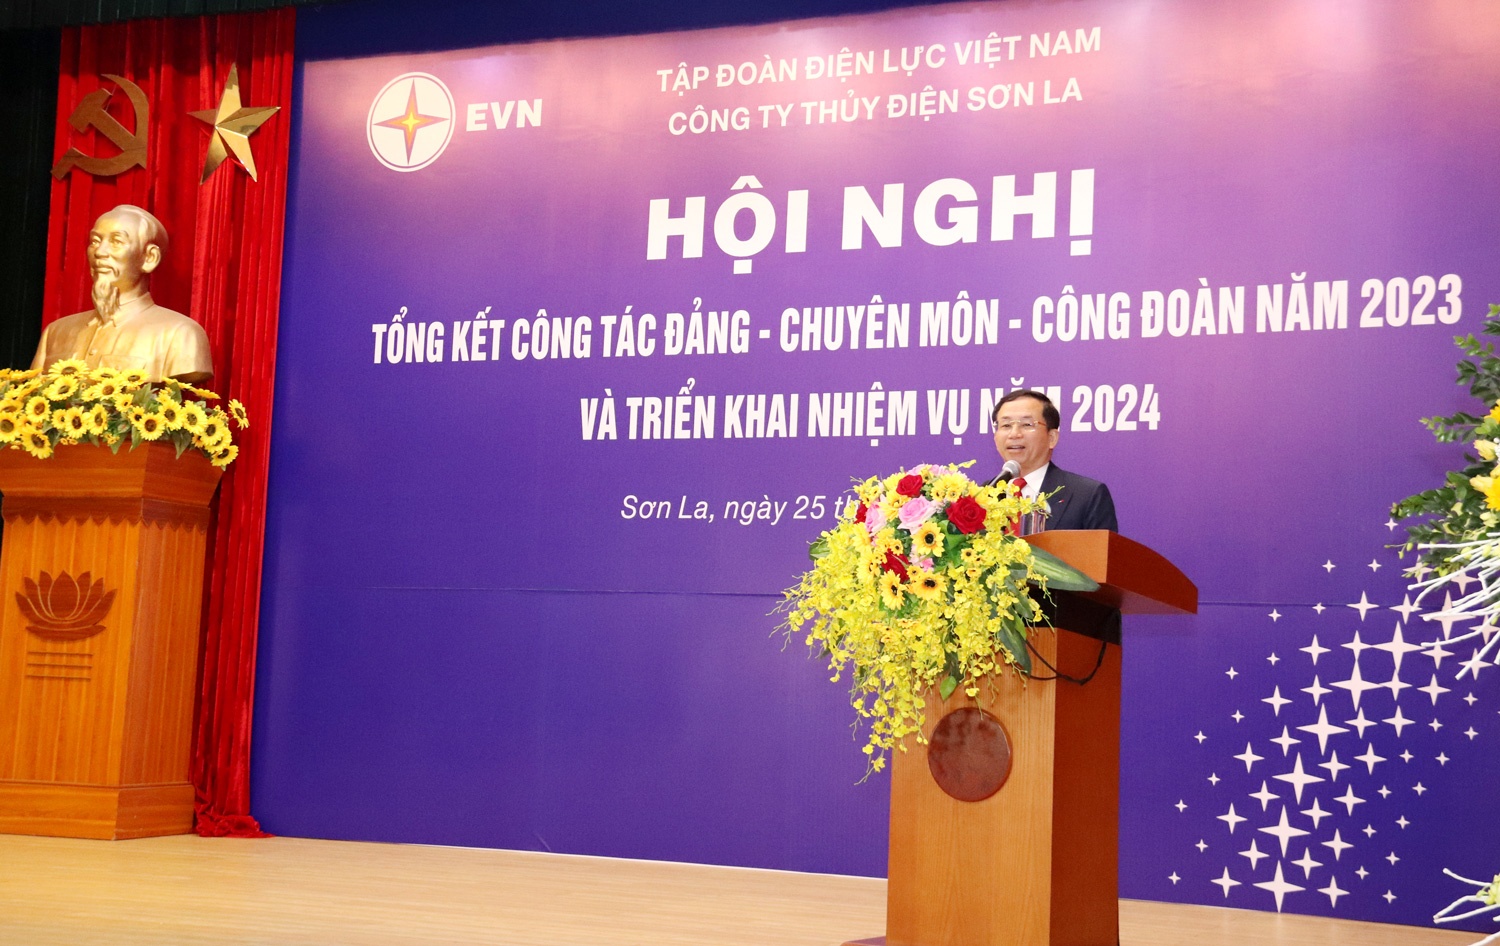 Công ty Thủy điện Sơn La có nhiều đóng góp quan trọng cho tỉnh Sơn La và EVN